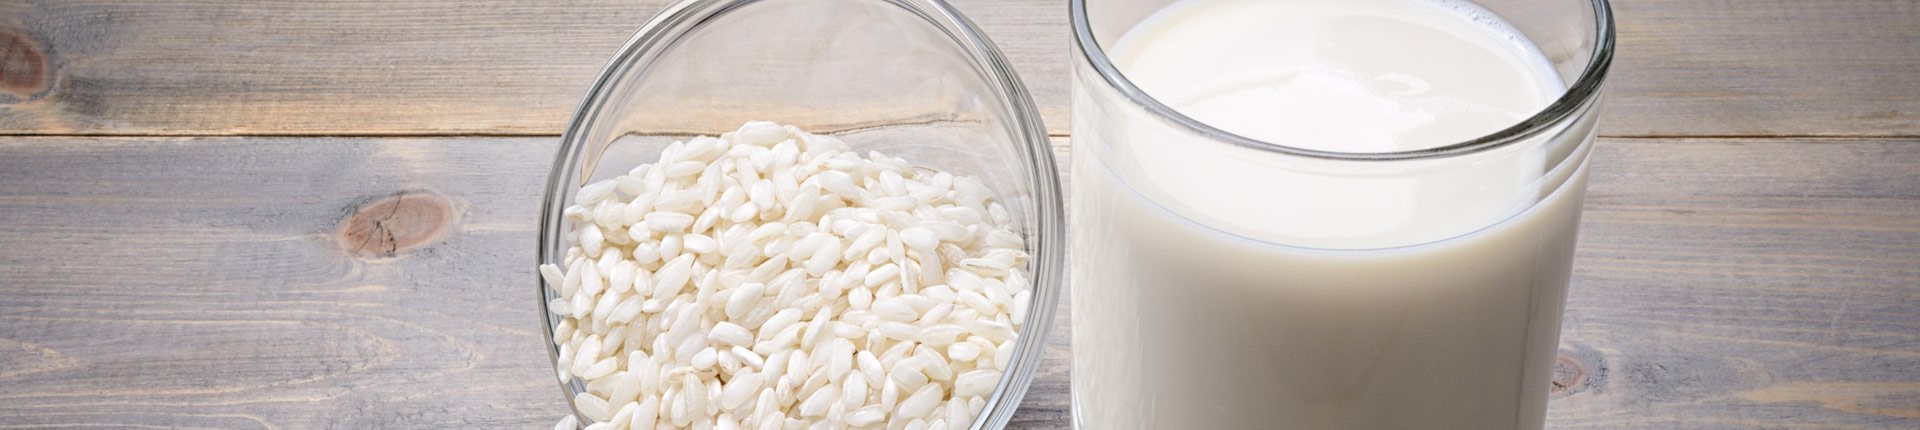 Które mleko roślinne jest najbardziej ekologiczne?